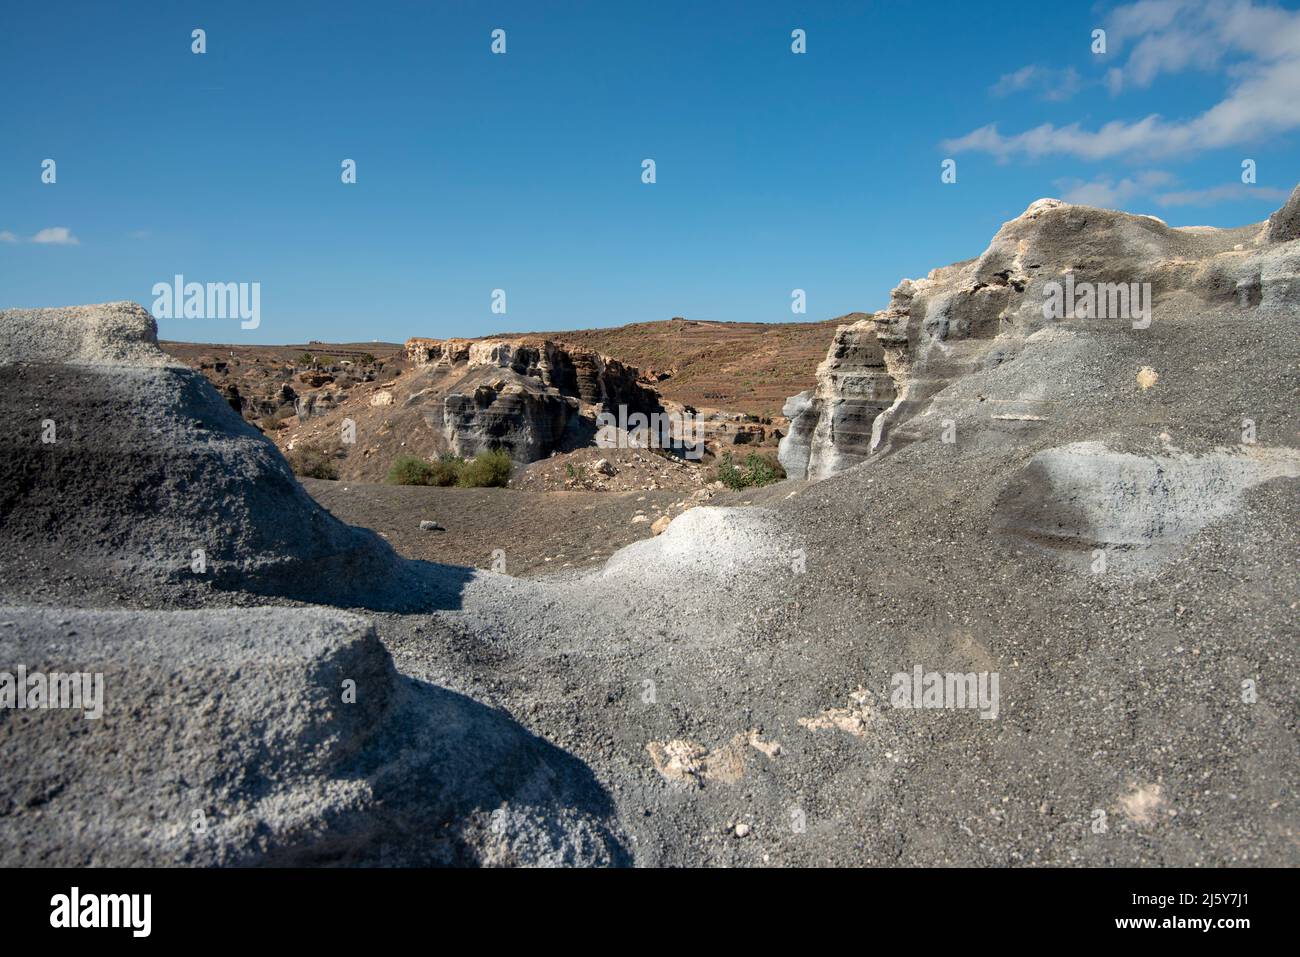 Die Felsformationen bleiben erhalten, nachdem die Erosion durch den Wind etwas Erde weggenommen hat. Stockfoto